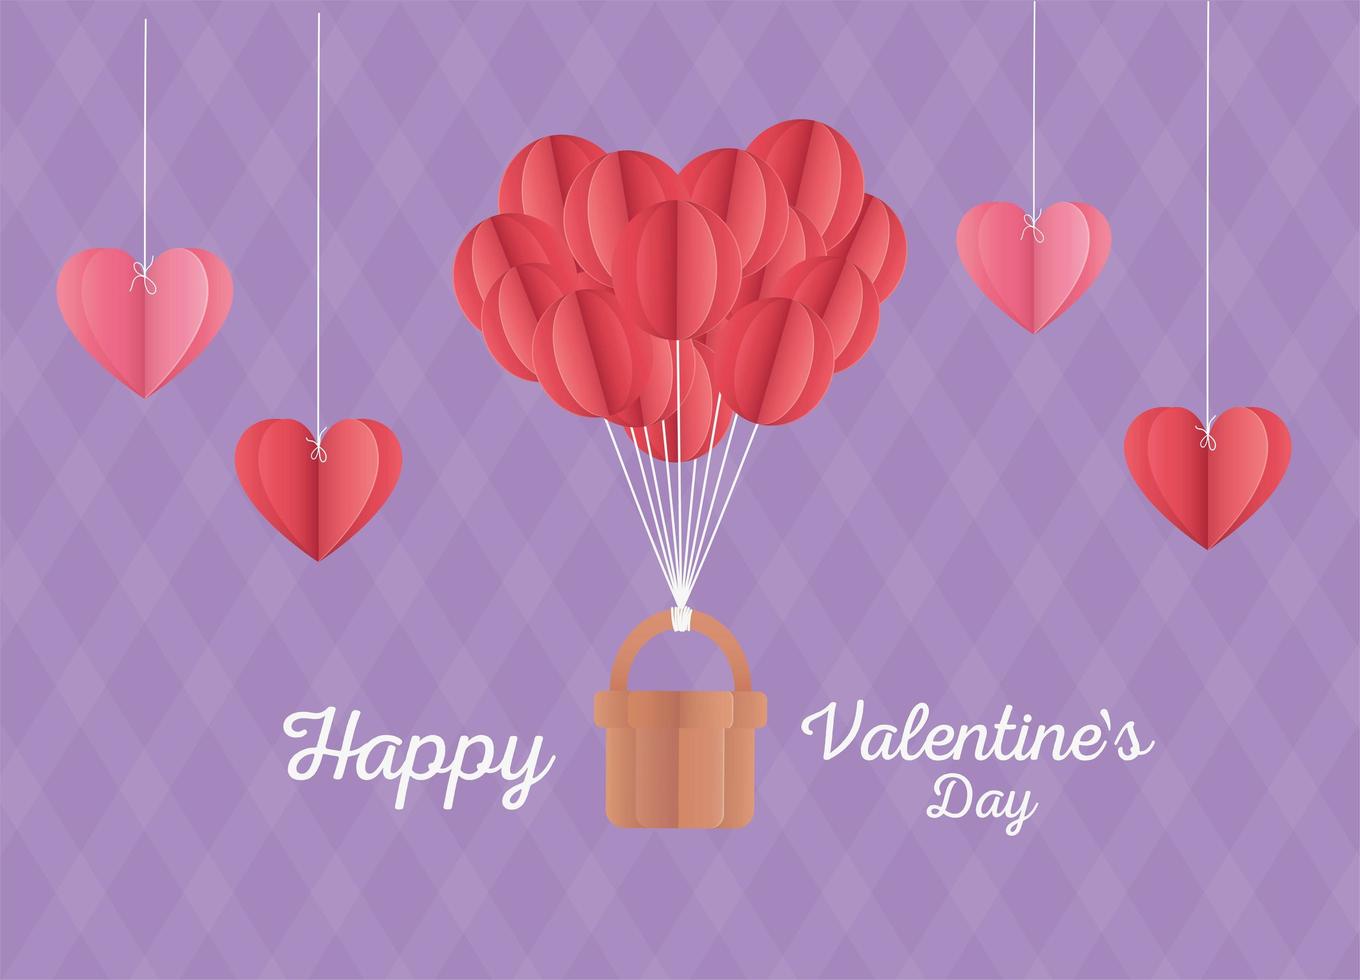 glad alla hjärtans dag origami hjärtan ballonger korg lila bakgrund vektor